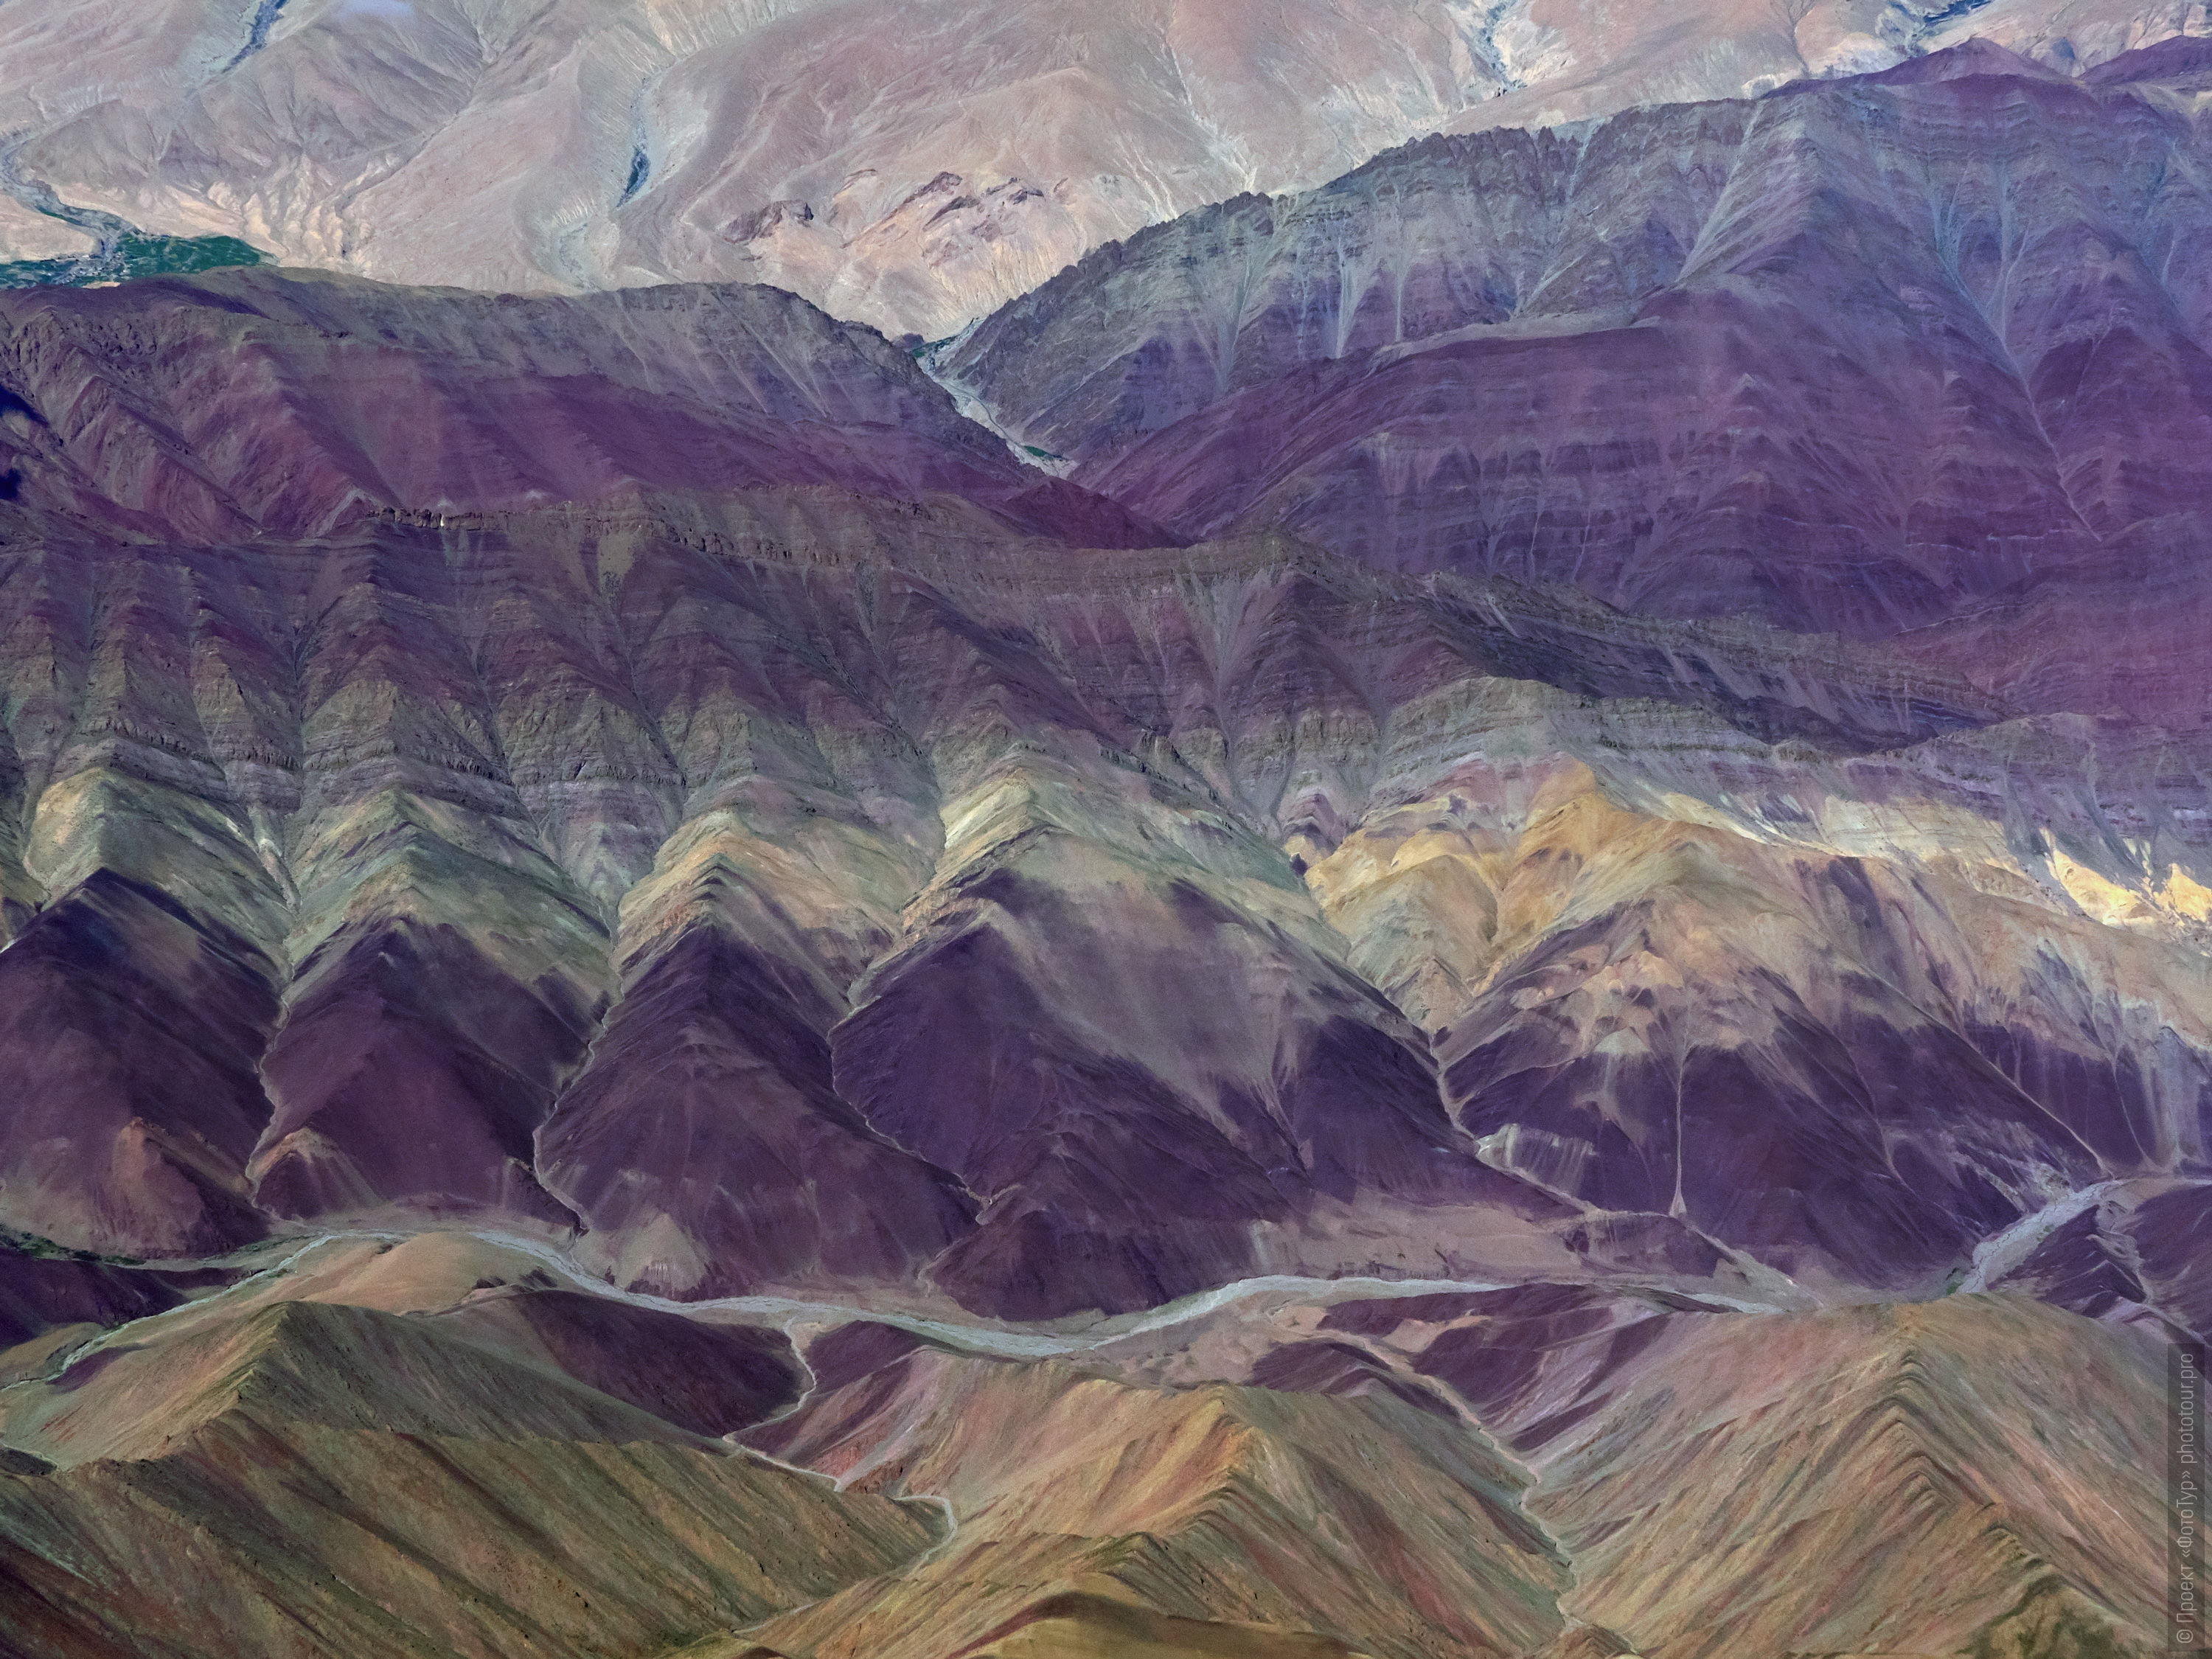 Abstract pictures of the purple mountains of Ladakh. Expedition Tibet Lake-2: Pangong, Tso Moriri, Tso Kar, Tso Startsapak, Leh-Manali highway.